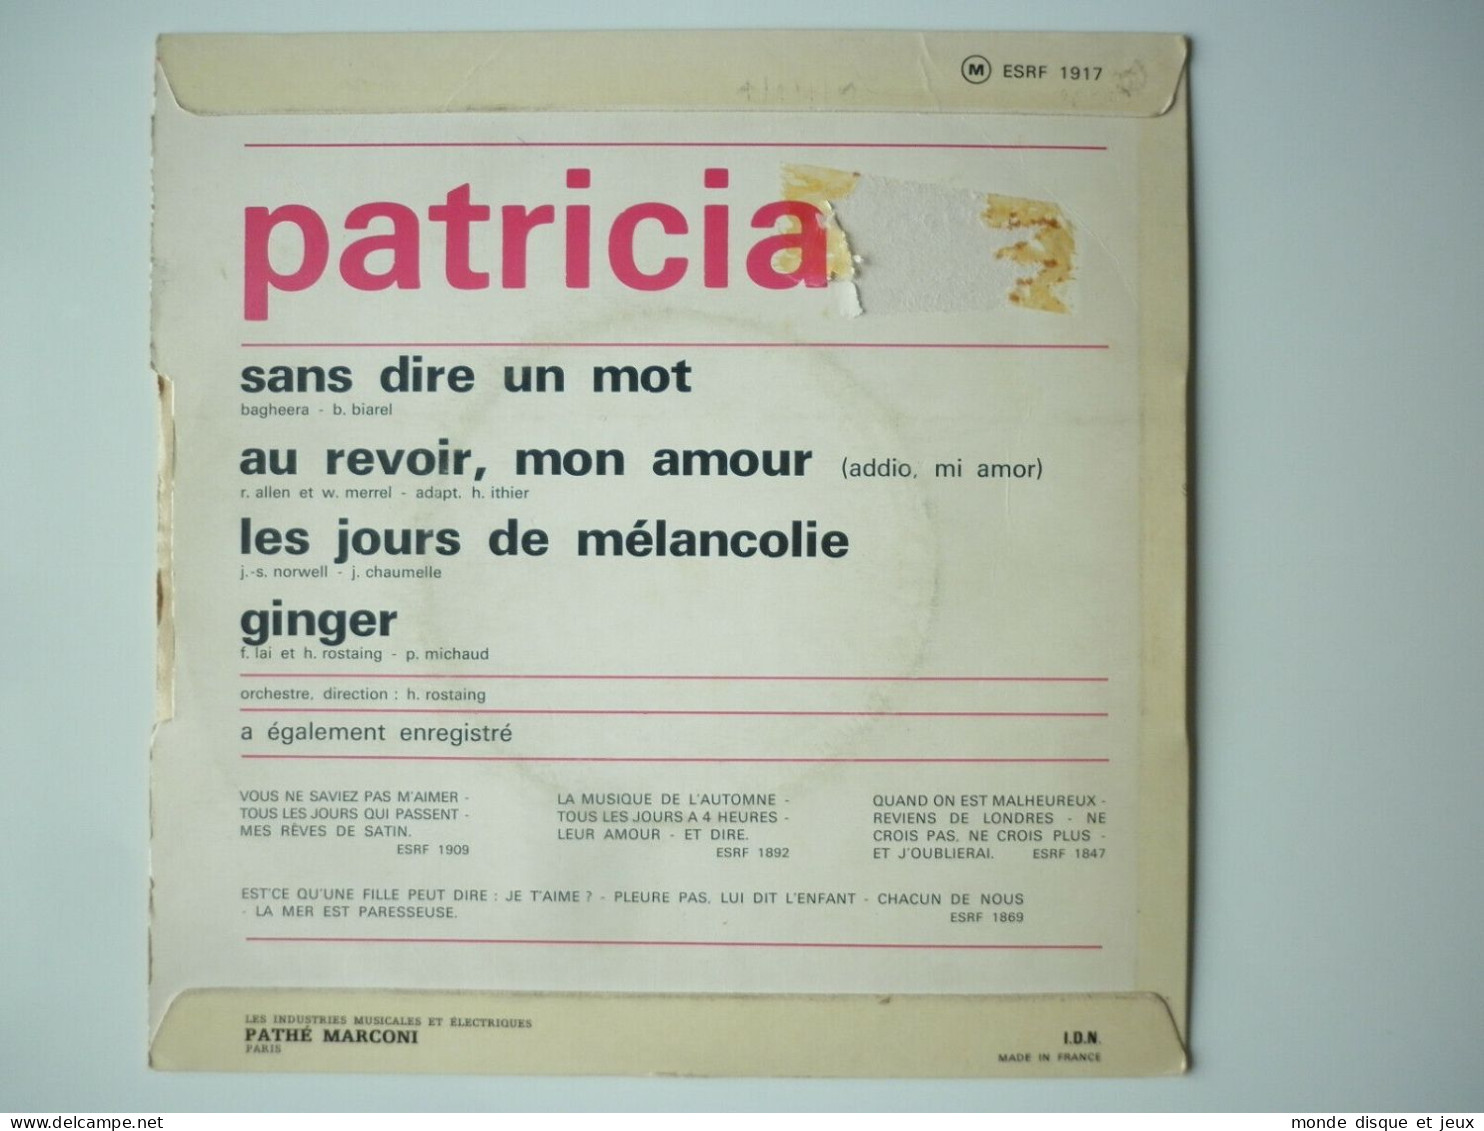 Patricia 45Tours EP Vinyle Sans Dire Un Mot - 45 T - Maxi-Single